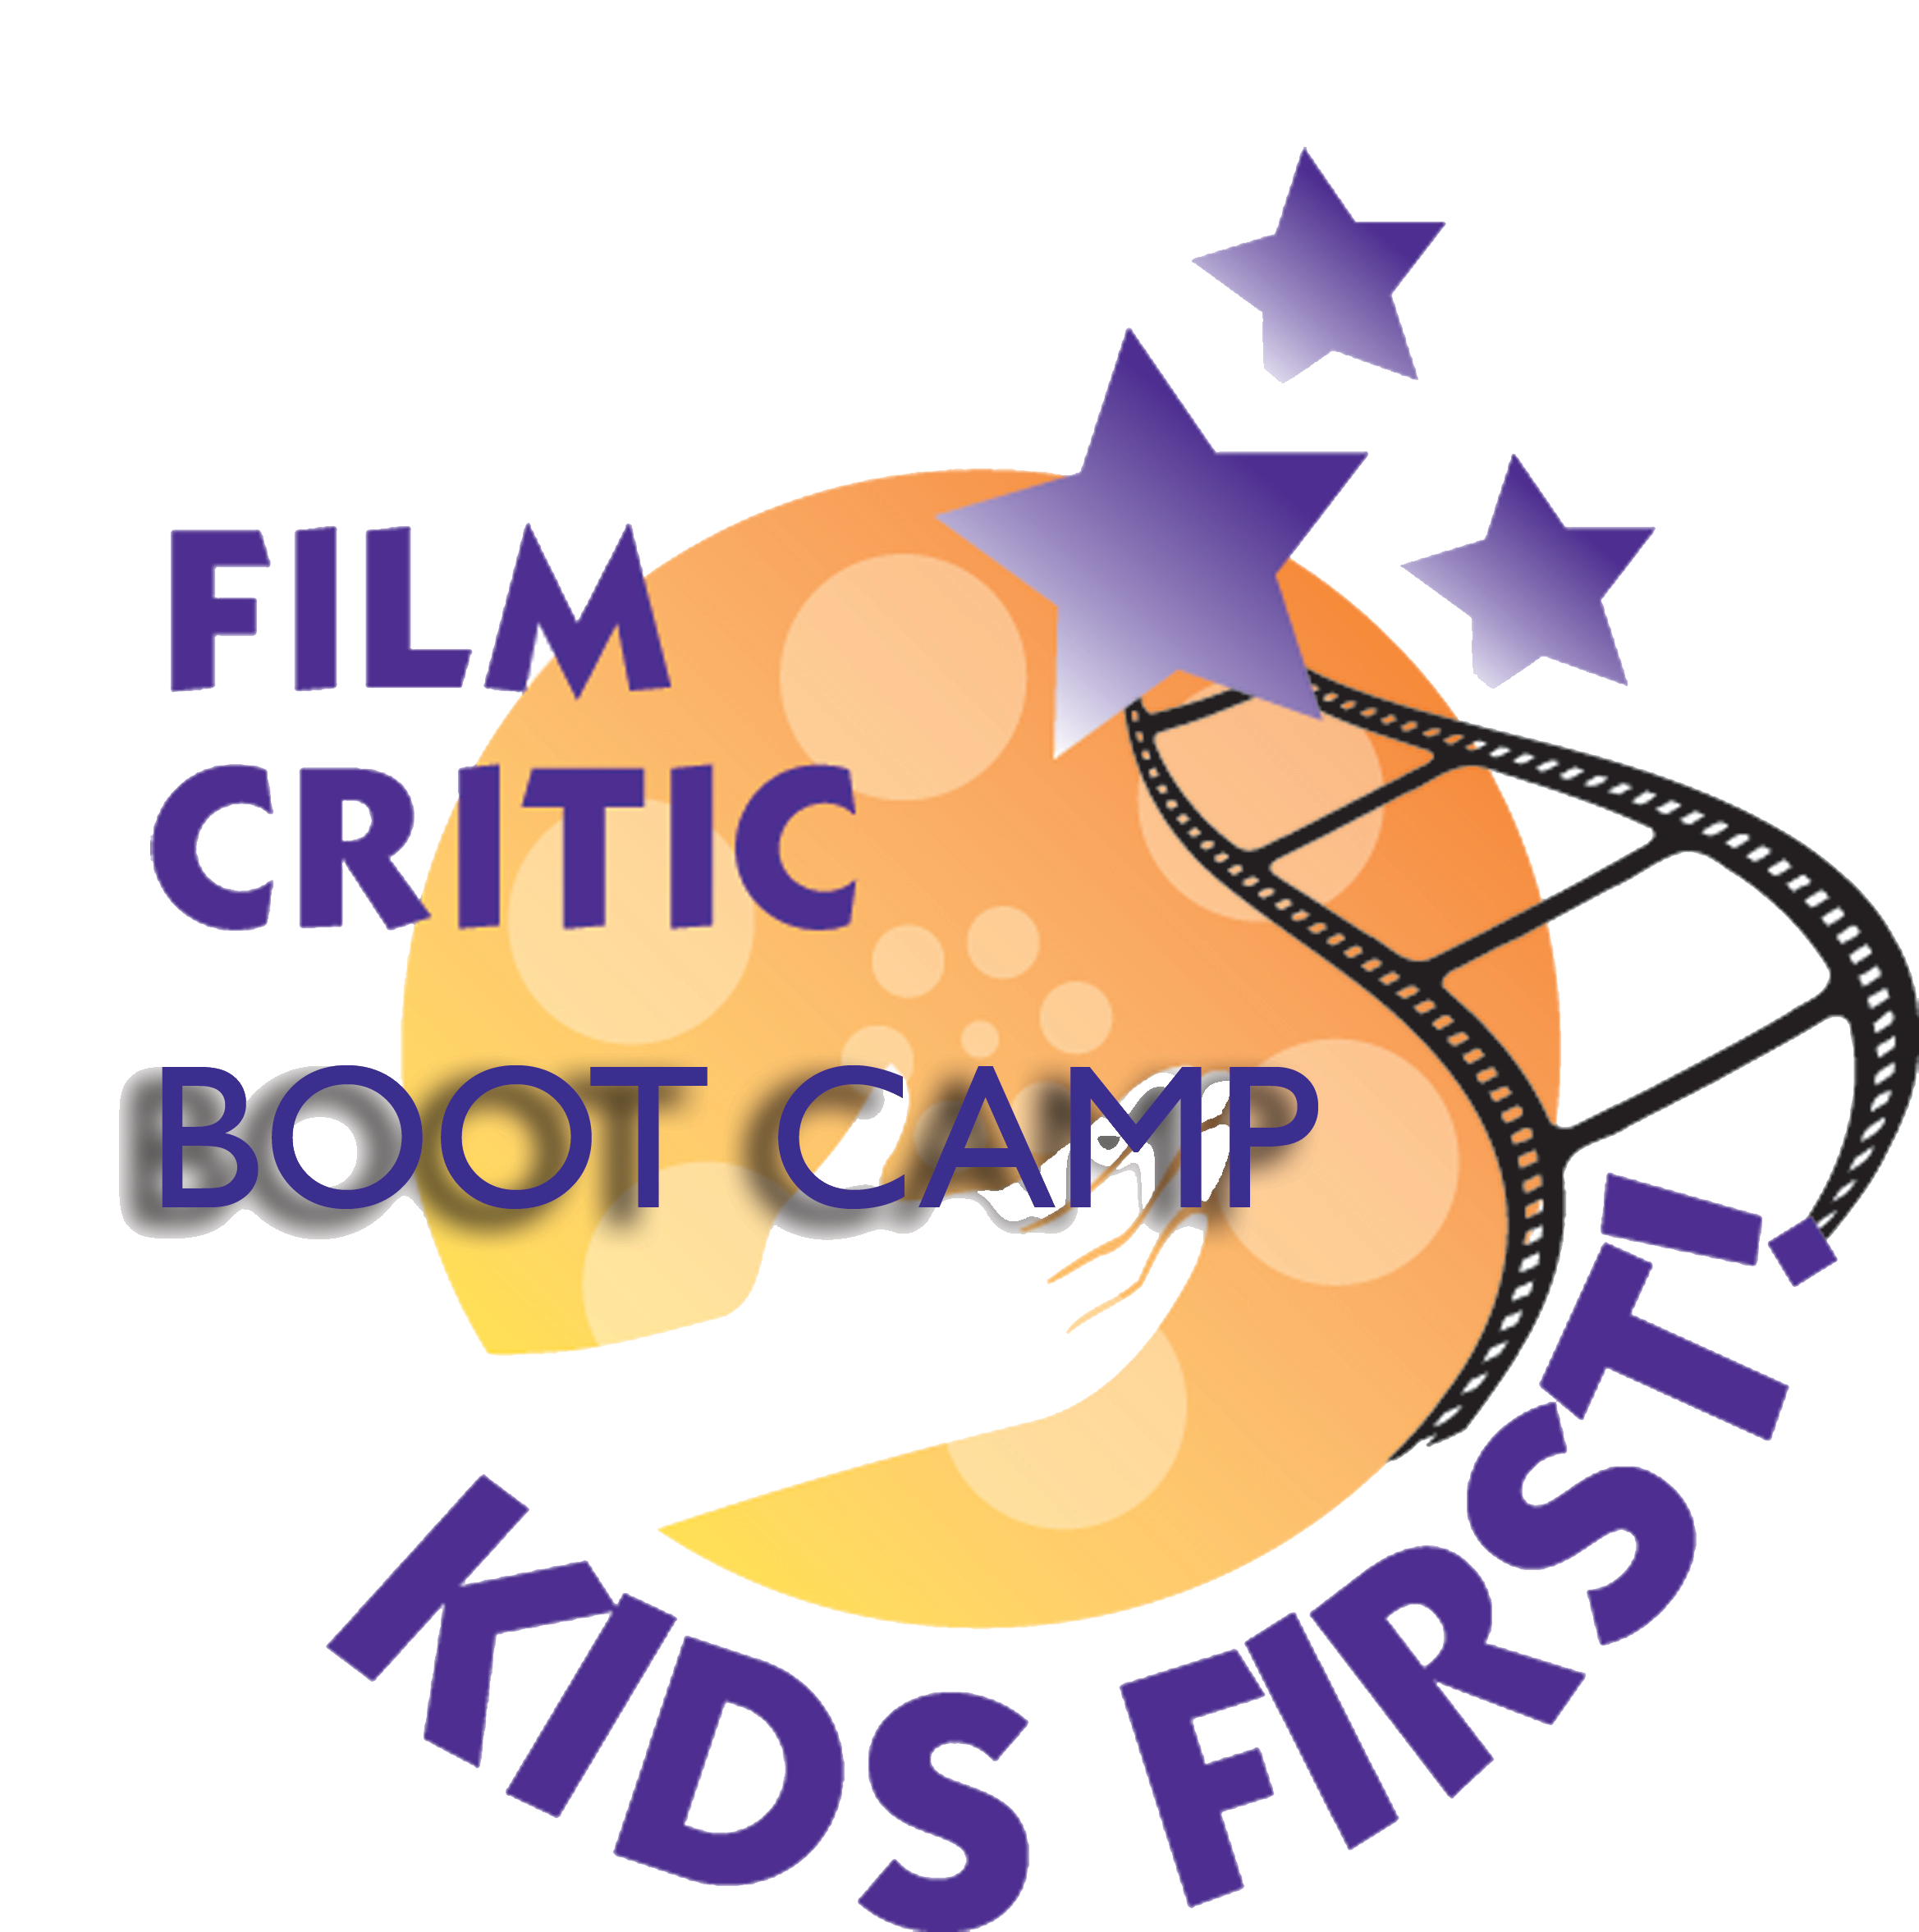 KIDS FIRST! Film Critics Boot Camp Denver – June 4 through 8